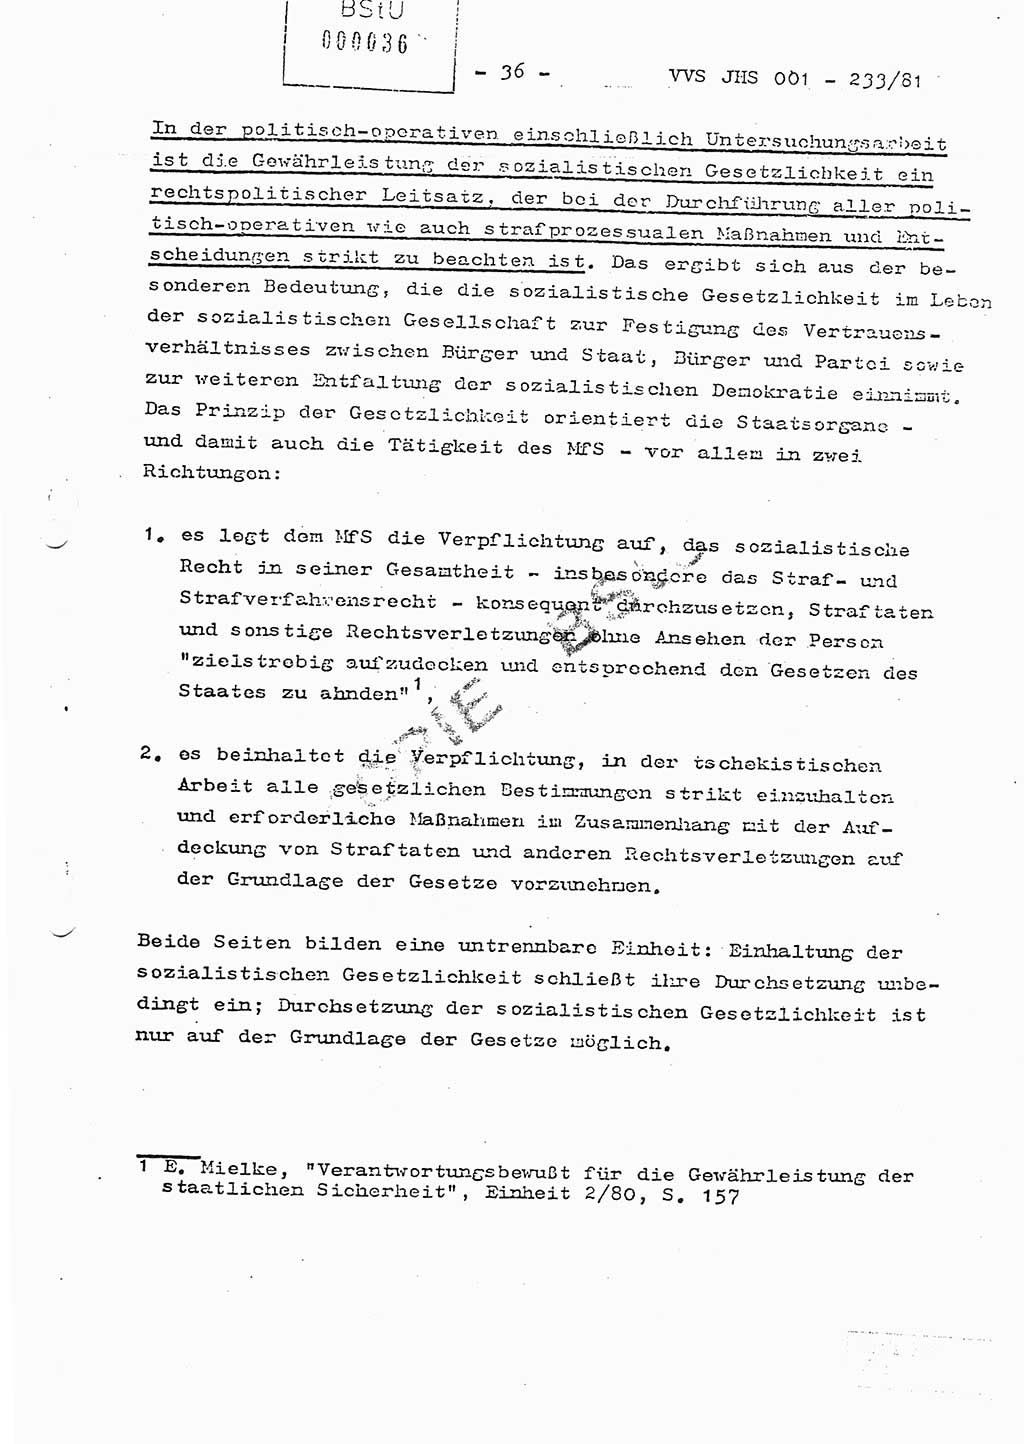 Dissertation Oberstleutnant Horst Zank (JHS), Oberstleutnant Dr. Karl-Heinz Knoblauch (JHS), Oberstleutnant Gustav-Adolf Kowalewski (HA Ⅸ), Oberstleutnant Wolfgang Plötner (HA Ⅸ), Ministerium für Staatssicherheit (MfS) [Deutsche Demokratische Republik (DDR)], Juristische Hochschule (JHS), Vertrauliche Verschlußsache (VVS) o001-233/81, Potsdam 1981, Blatt 36 (Diss. MfS DDR JHS VVS o001-233/81 1981, Bl. 36)